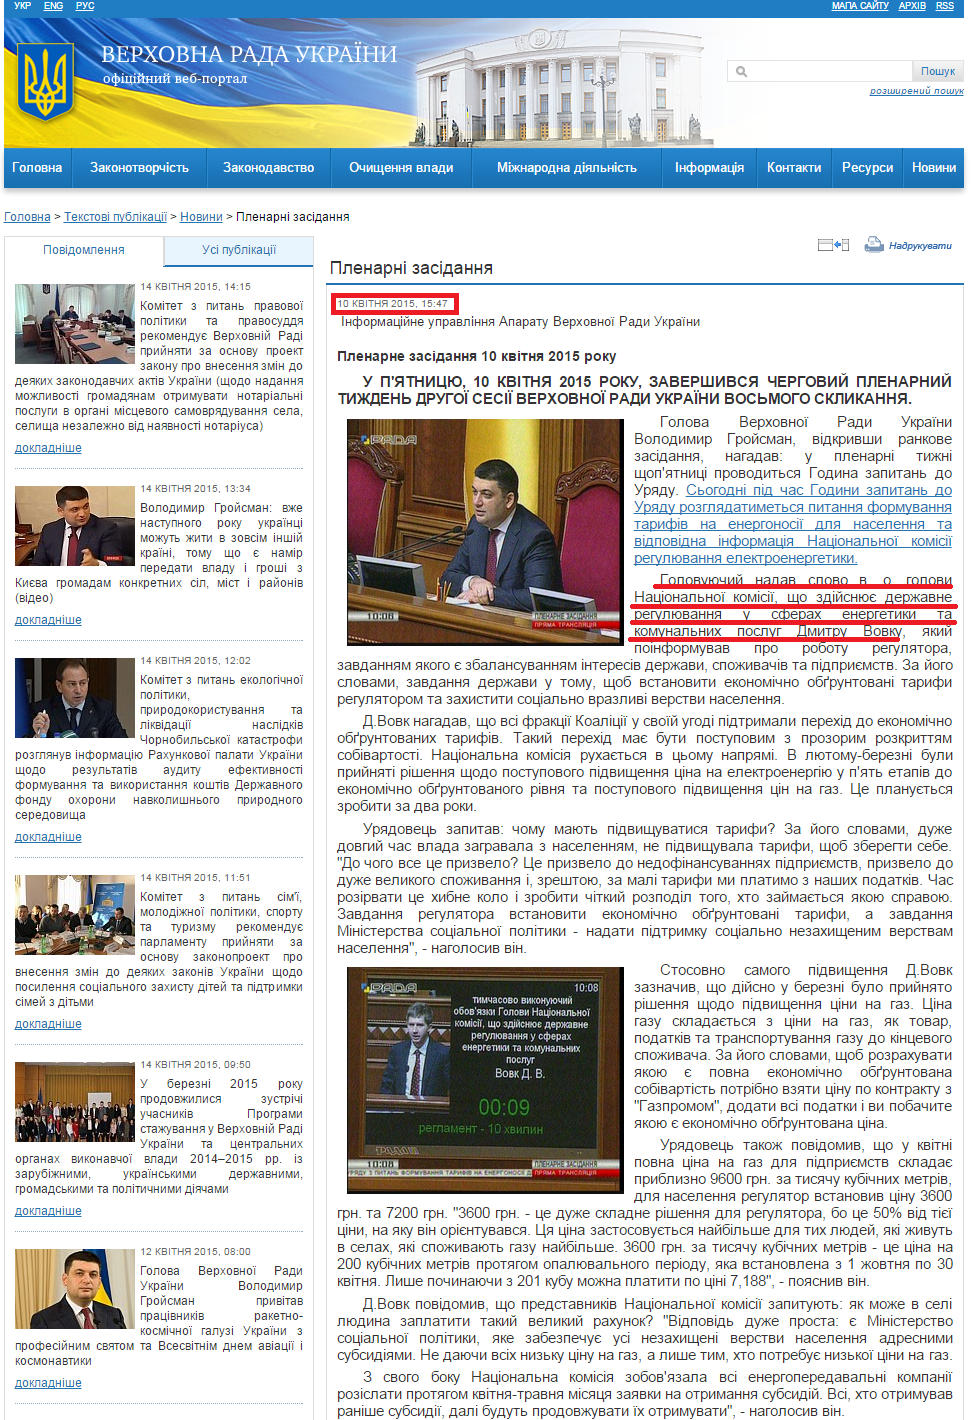 http://iportal.rada.gov.ua/news/Novyny/Plenarni_zasidannya/107321.html